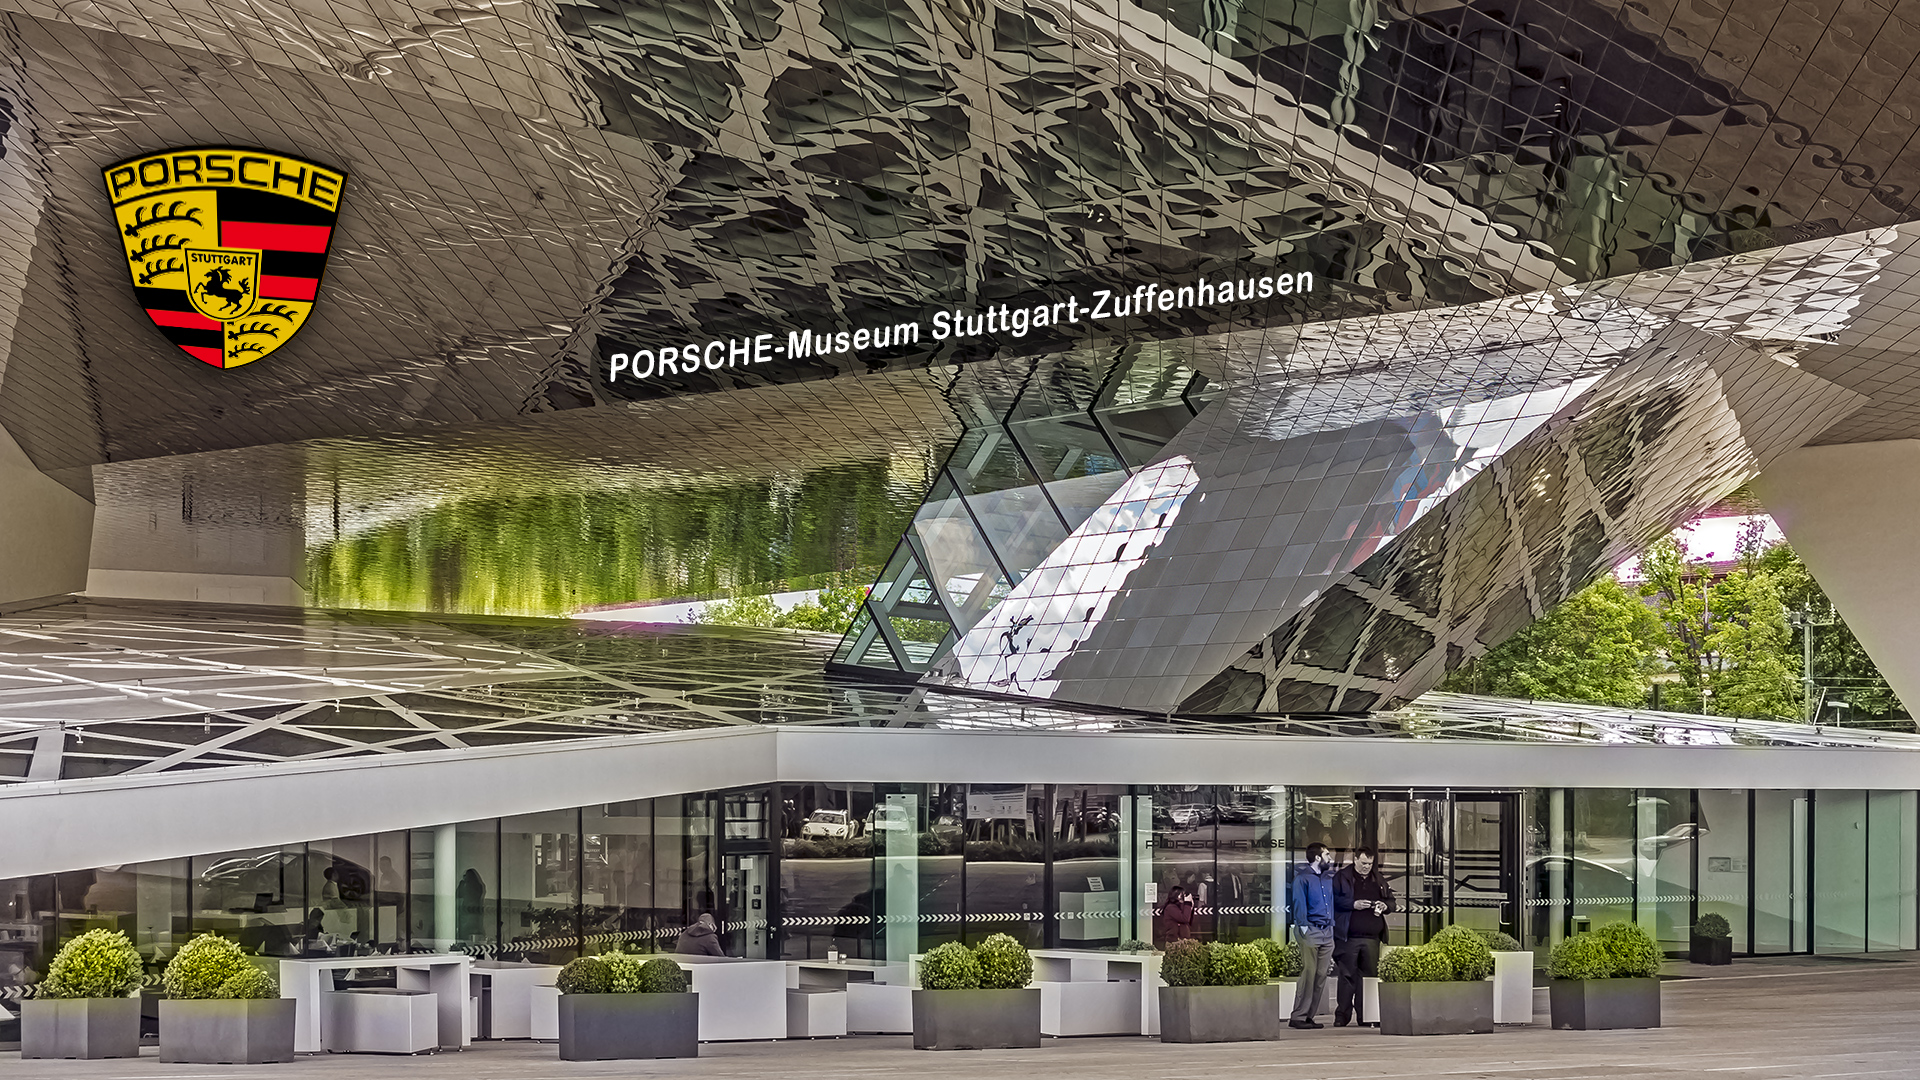 PORSCHE-Museum Stuttgart-Zuffenhausen.